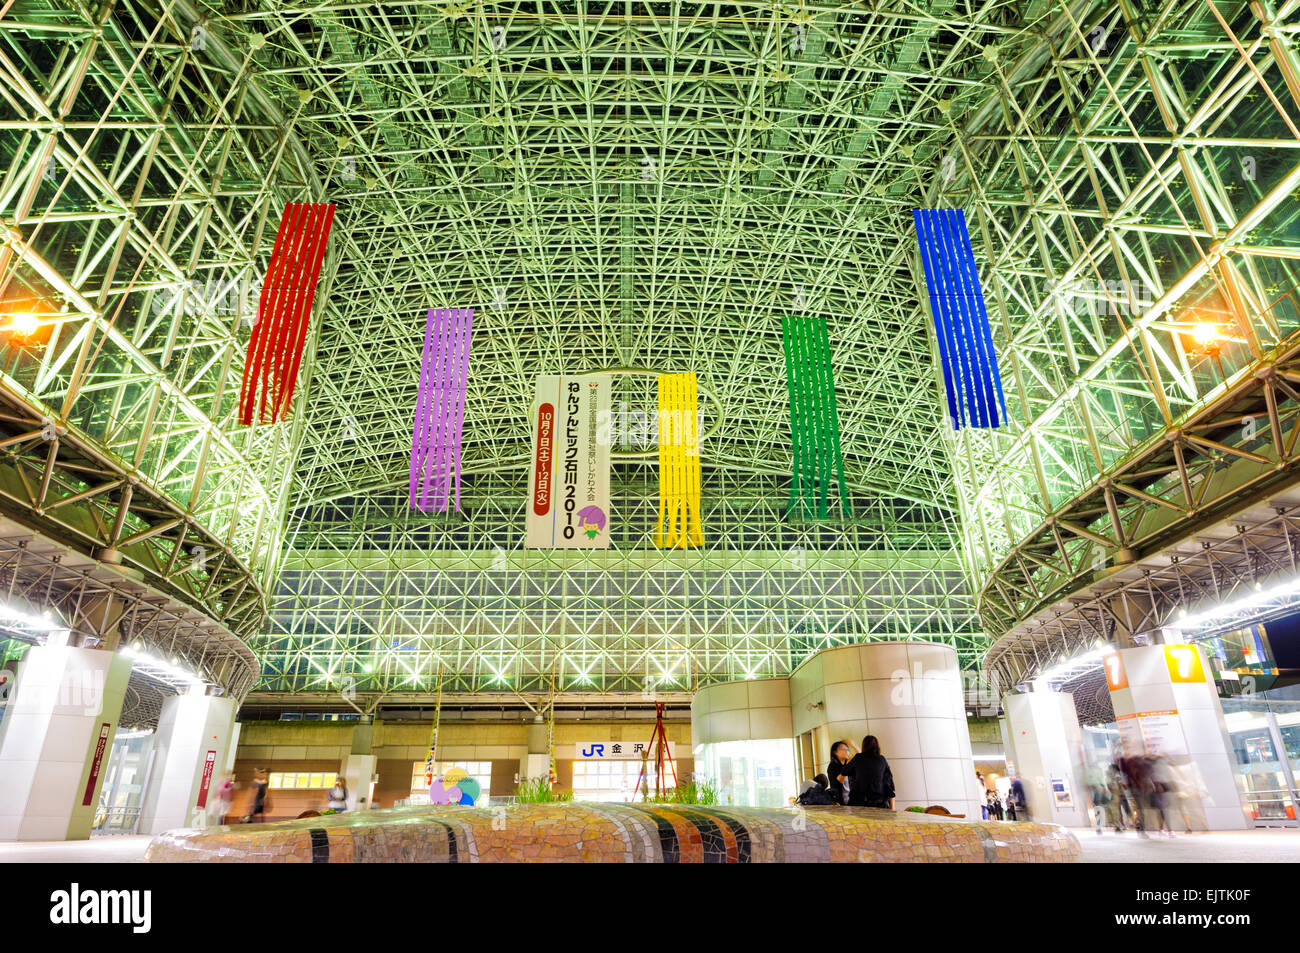 Impressionante struttura a reticolo in acciaio sopra la splendida entrata alla Stazione di Kanazawa, Ishikawa, Giappone; Giapponese di architettura postmoderna; moderno contemporaneo; Foto Stock